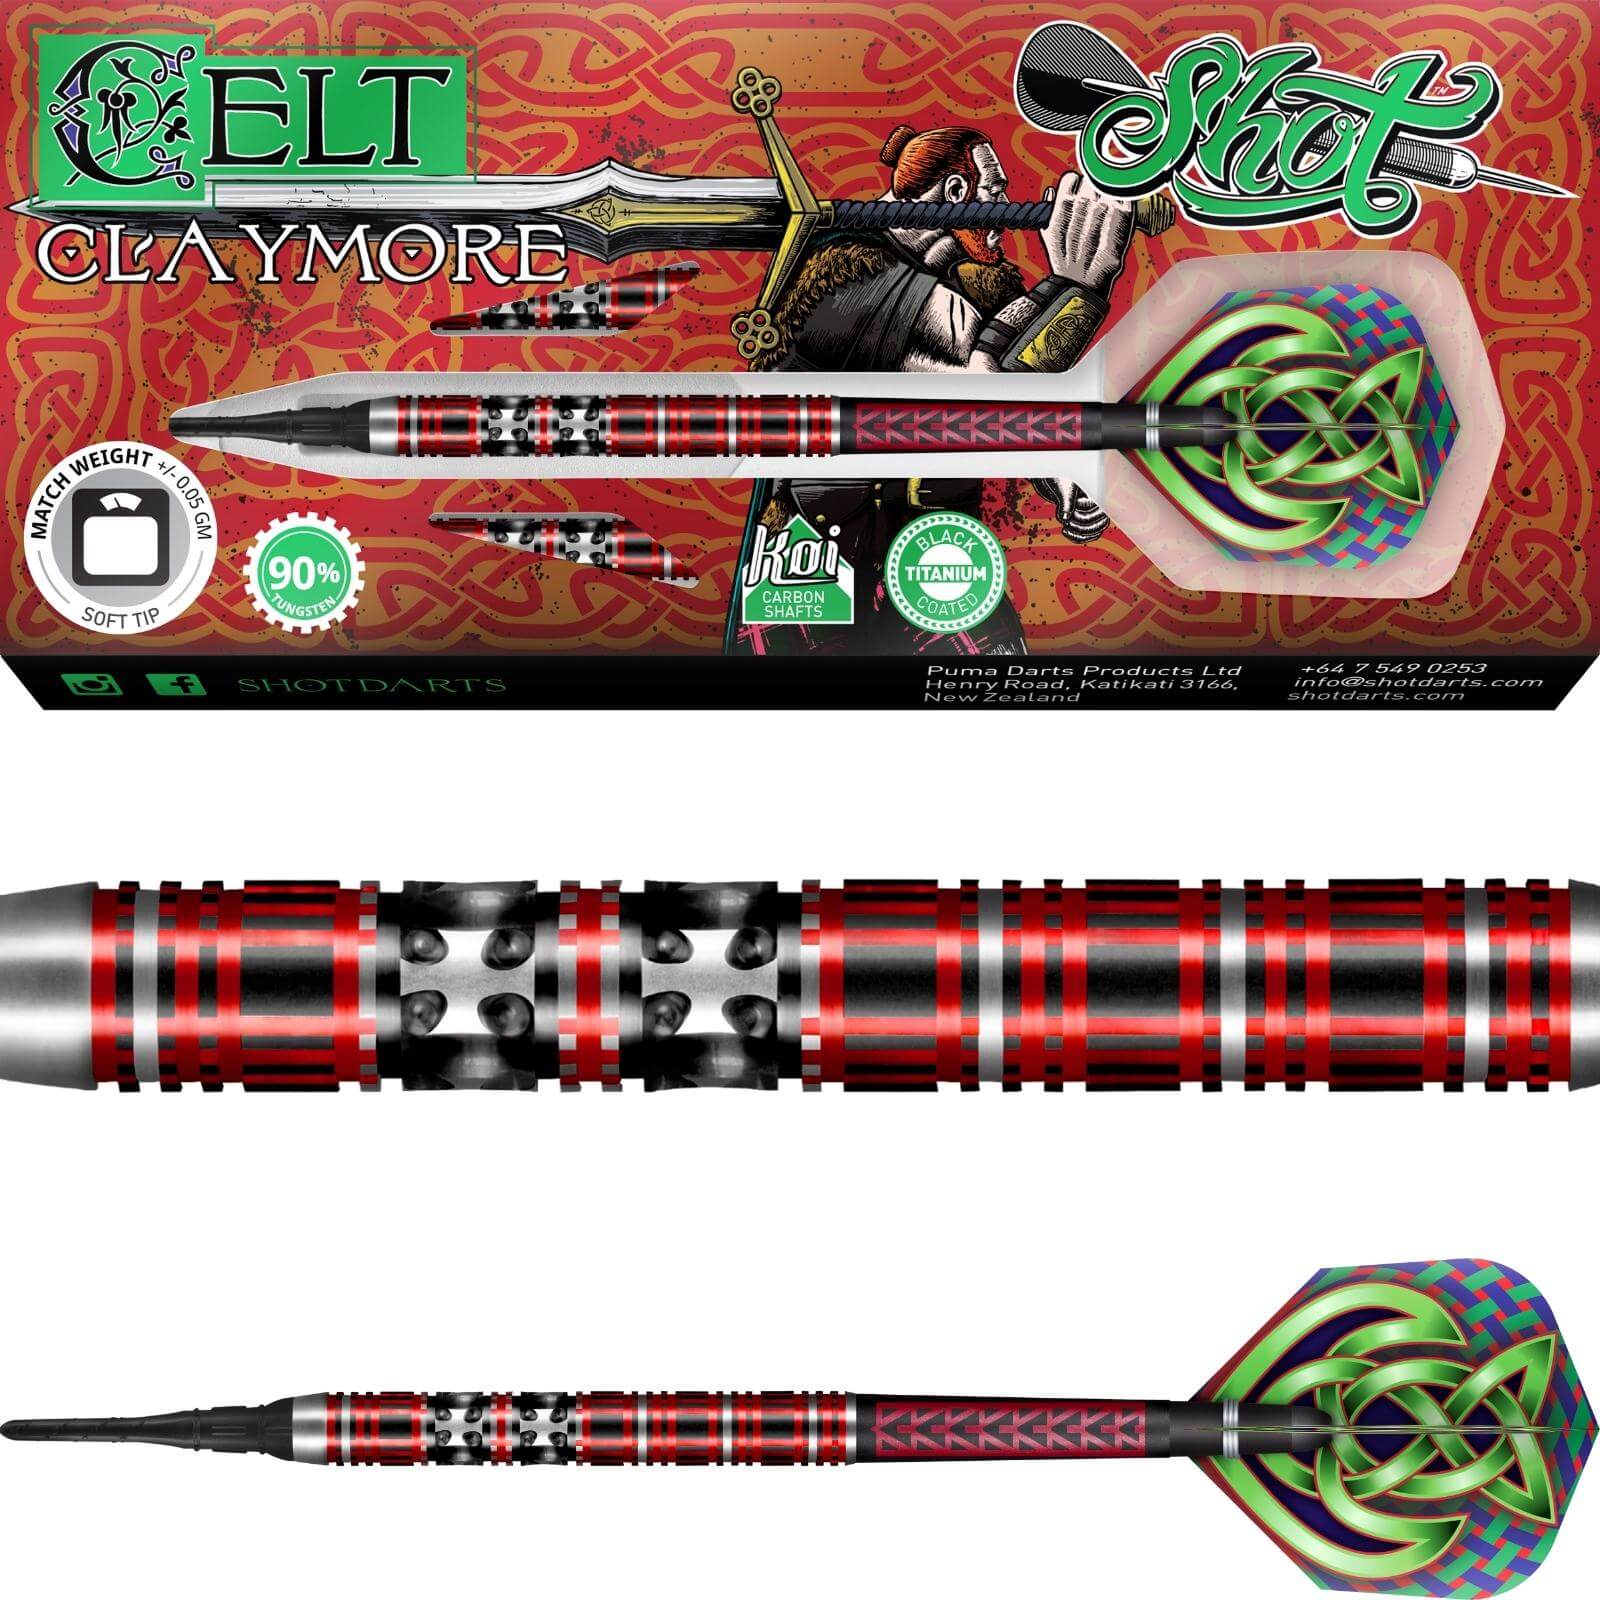 Darts - Shot - Celt Claymore Darts - Soft Tip - 90% Tungsten - 18g 20g 